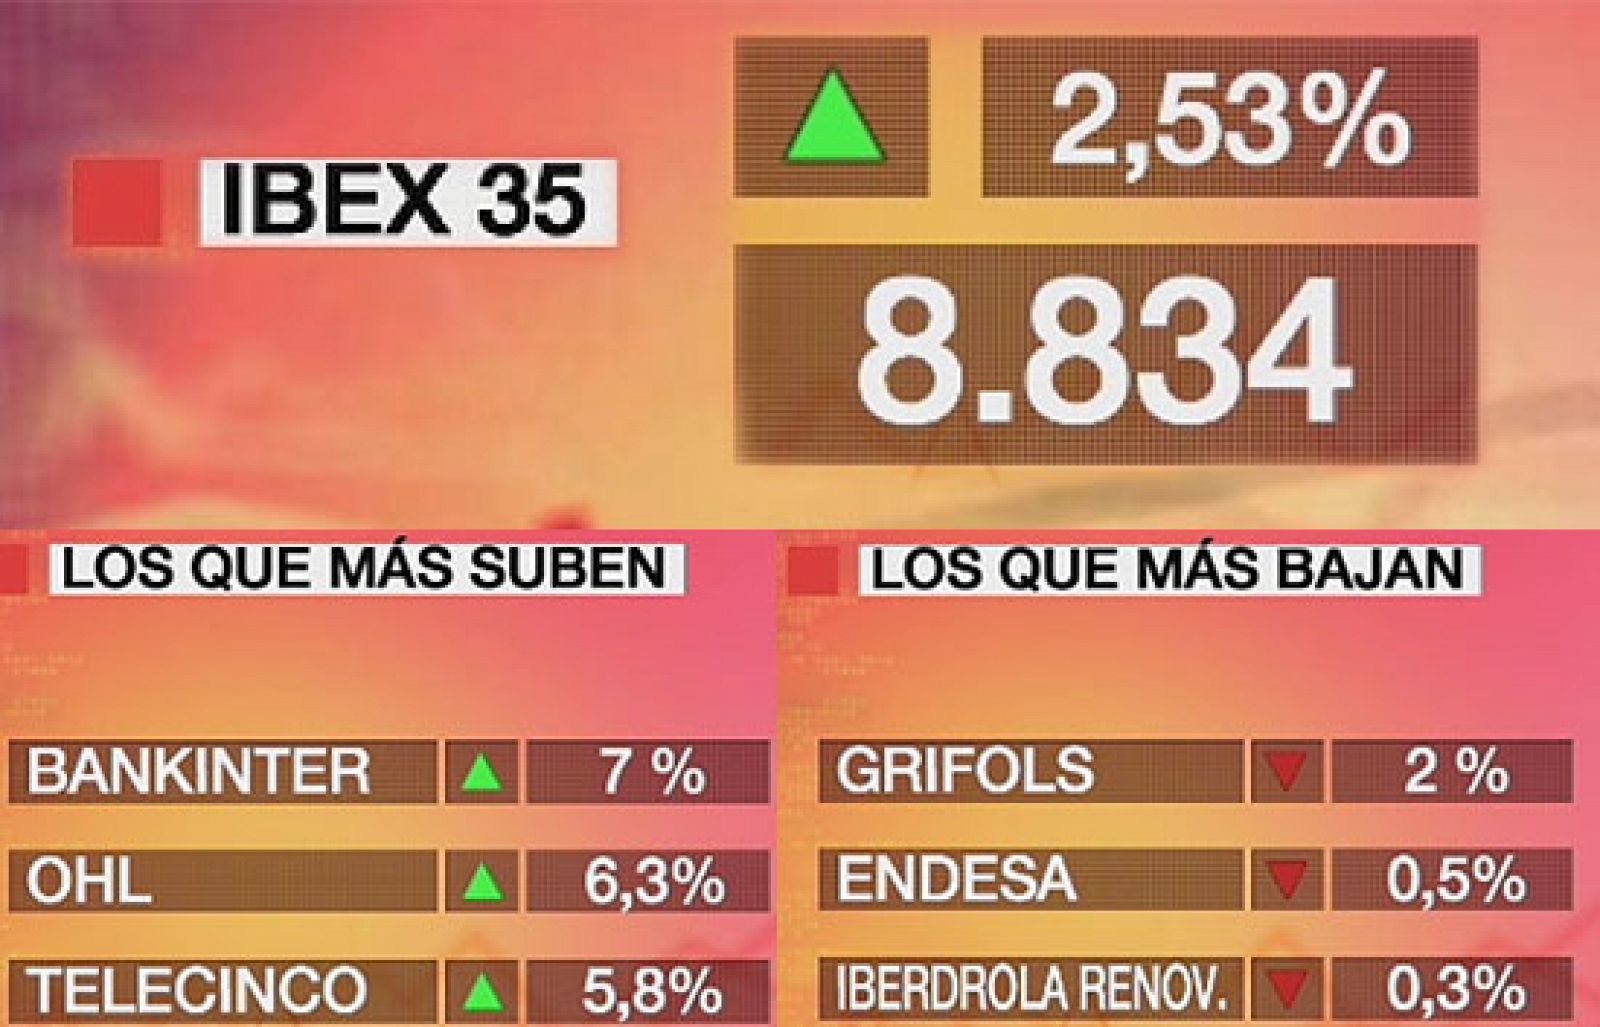 Economía 24H - El Ibex 35 gana el 2,53% y cierra en 8.834,10 puntos